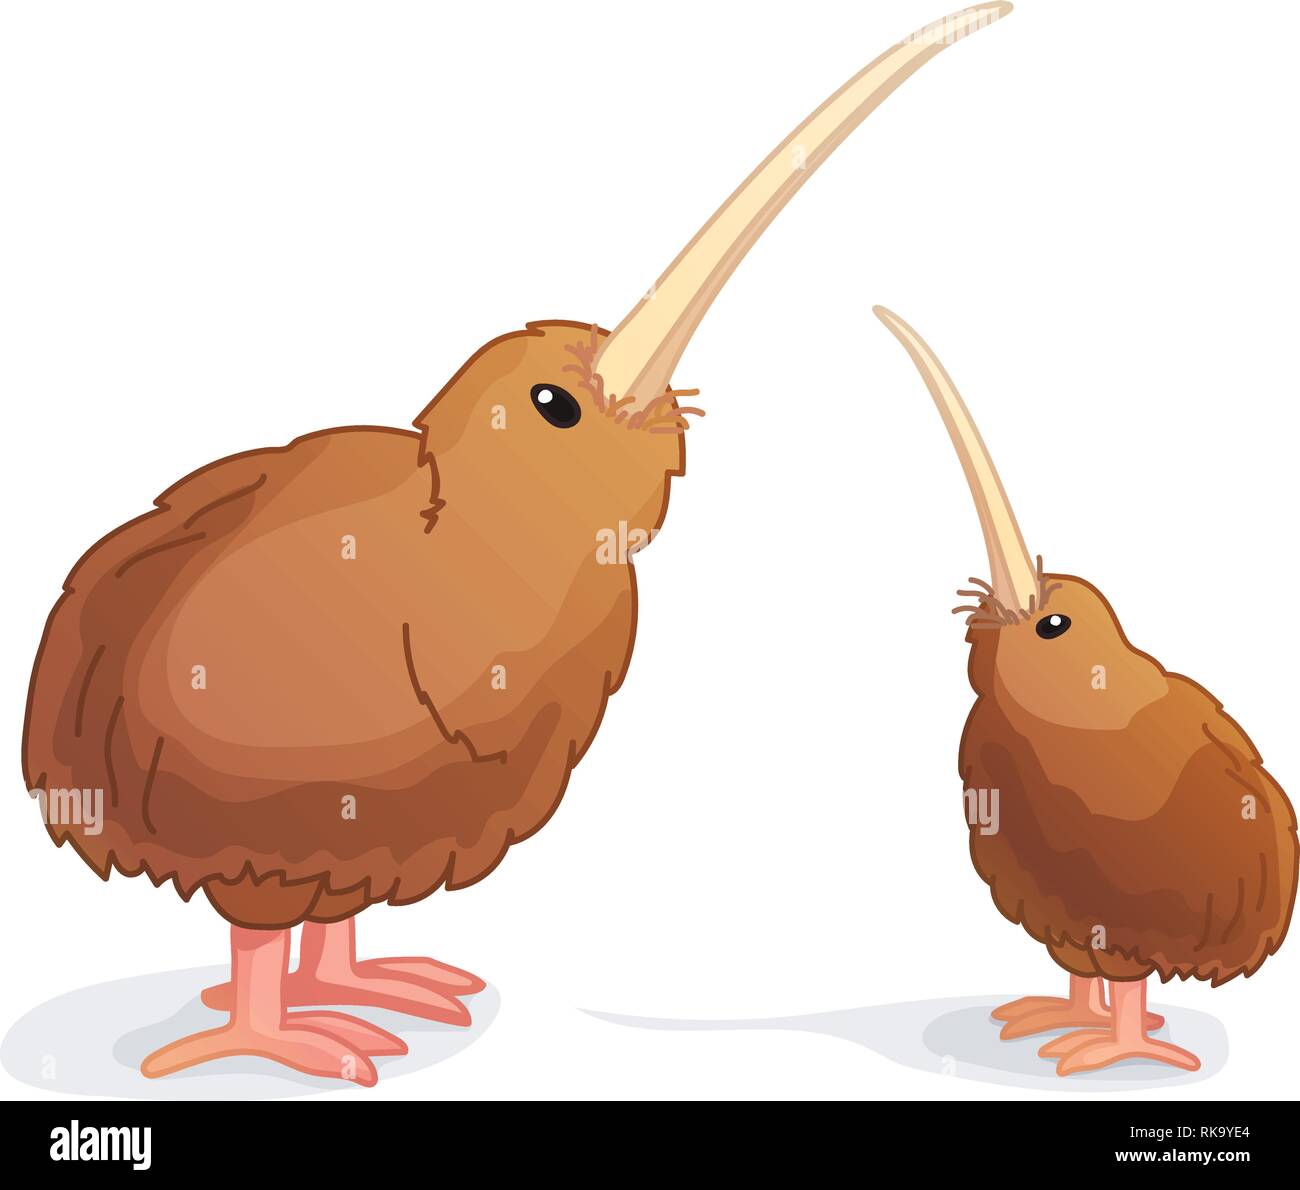 Cartoon kiwi bird hi-res stock photography and images - Alamy